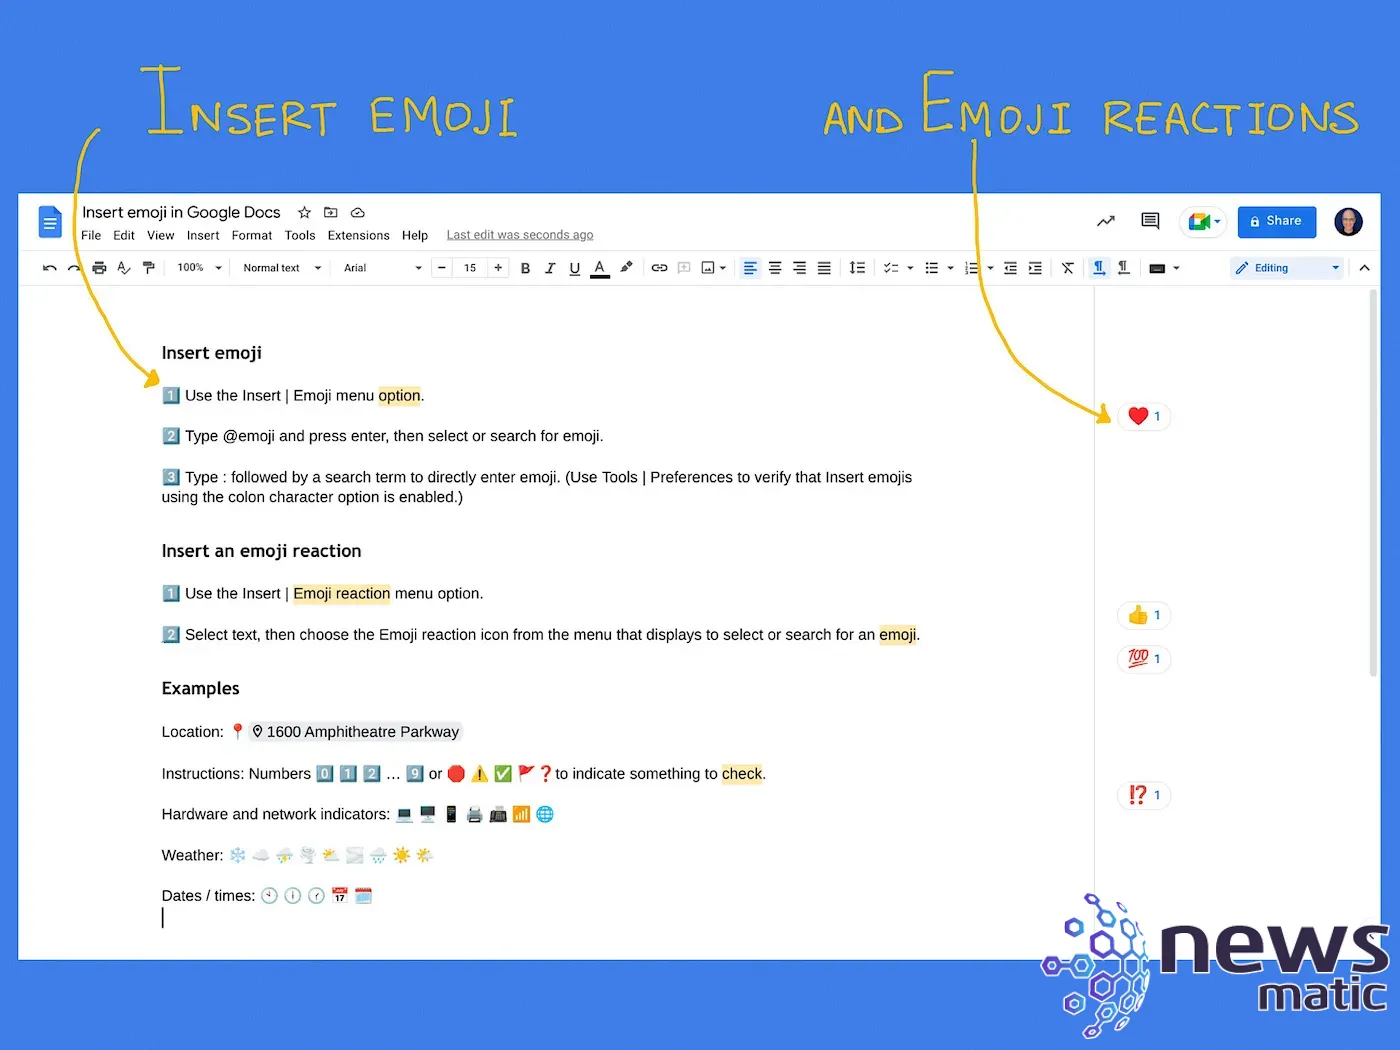 Cómo insertar emojis en Google Docs: guía paso a paso para web y dispositivos móviles - Software | Imagen 1 Newsmatic